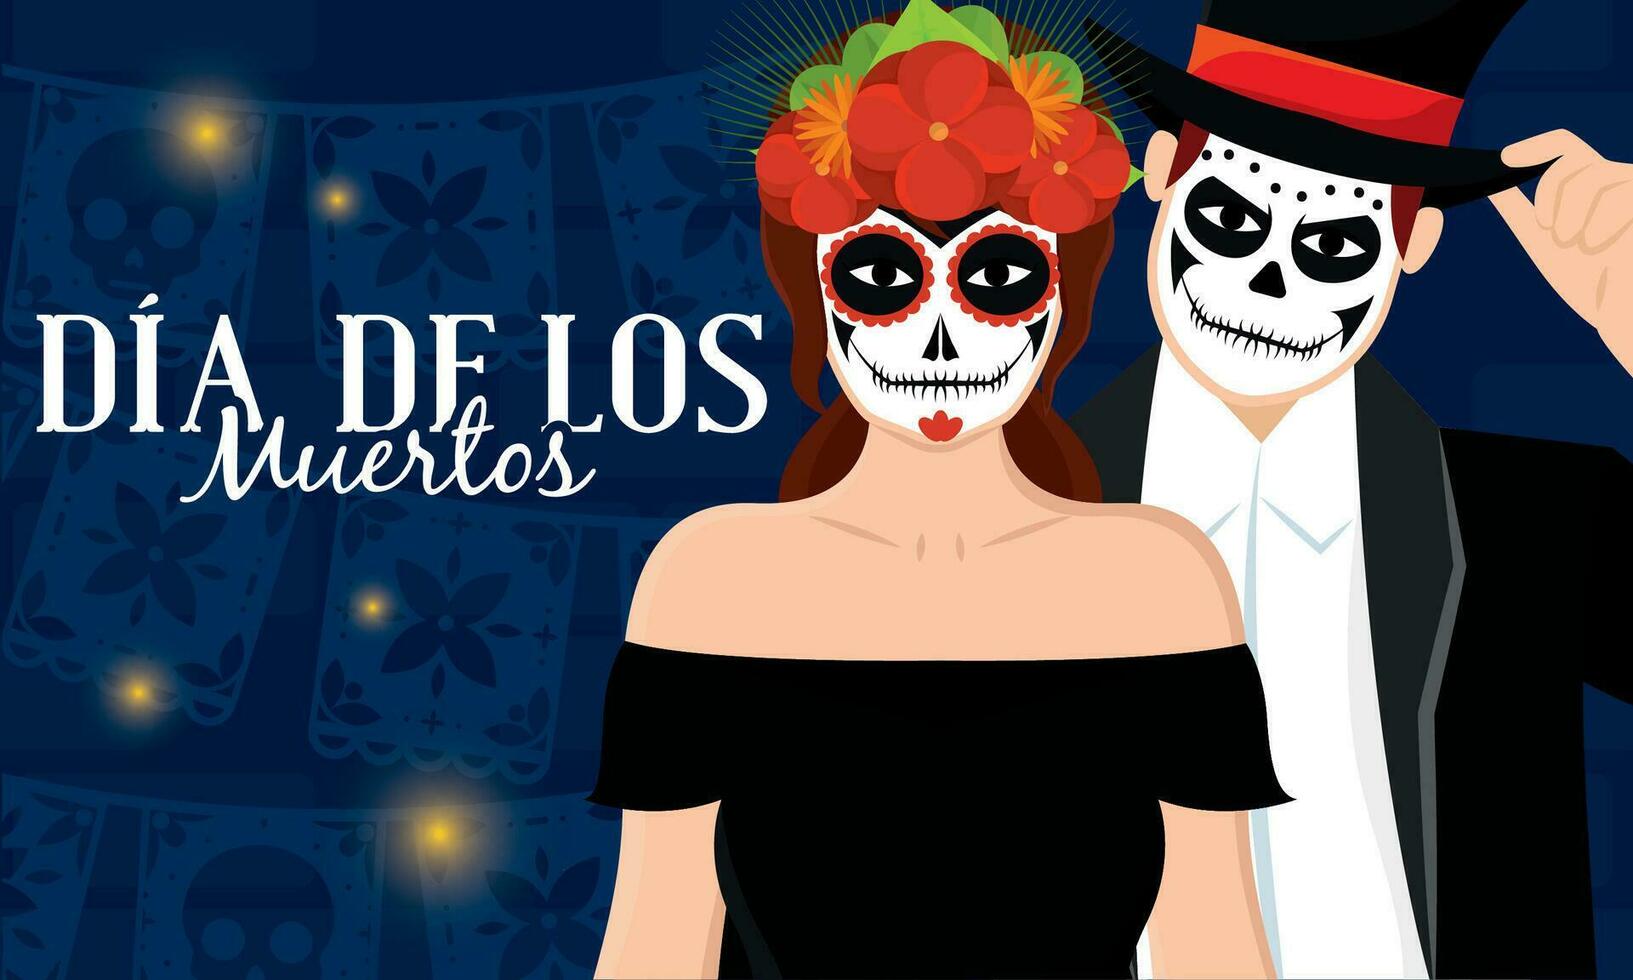 Cute couple with death costumes Dia de los muertos Vector